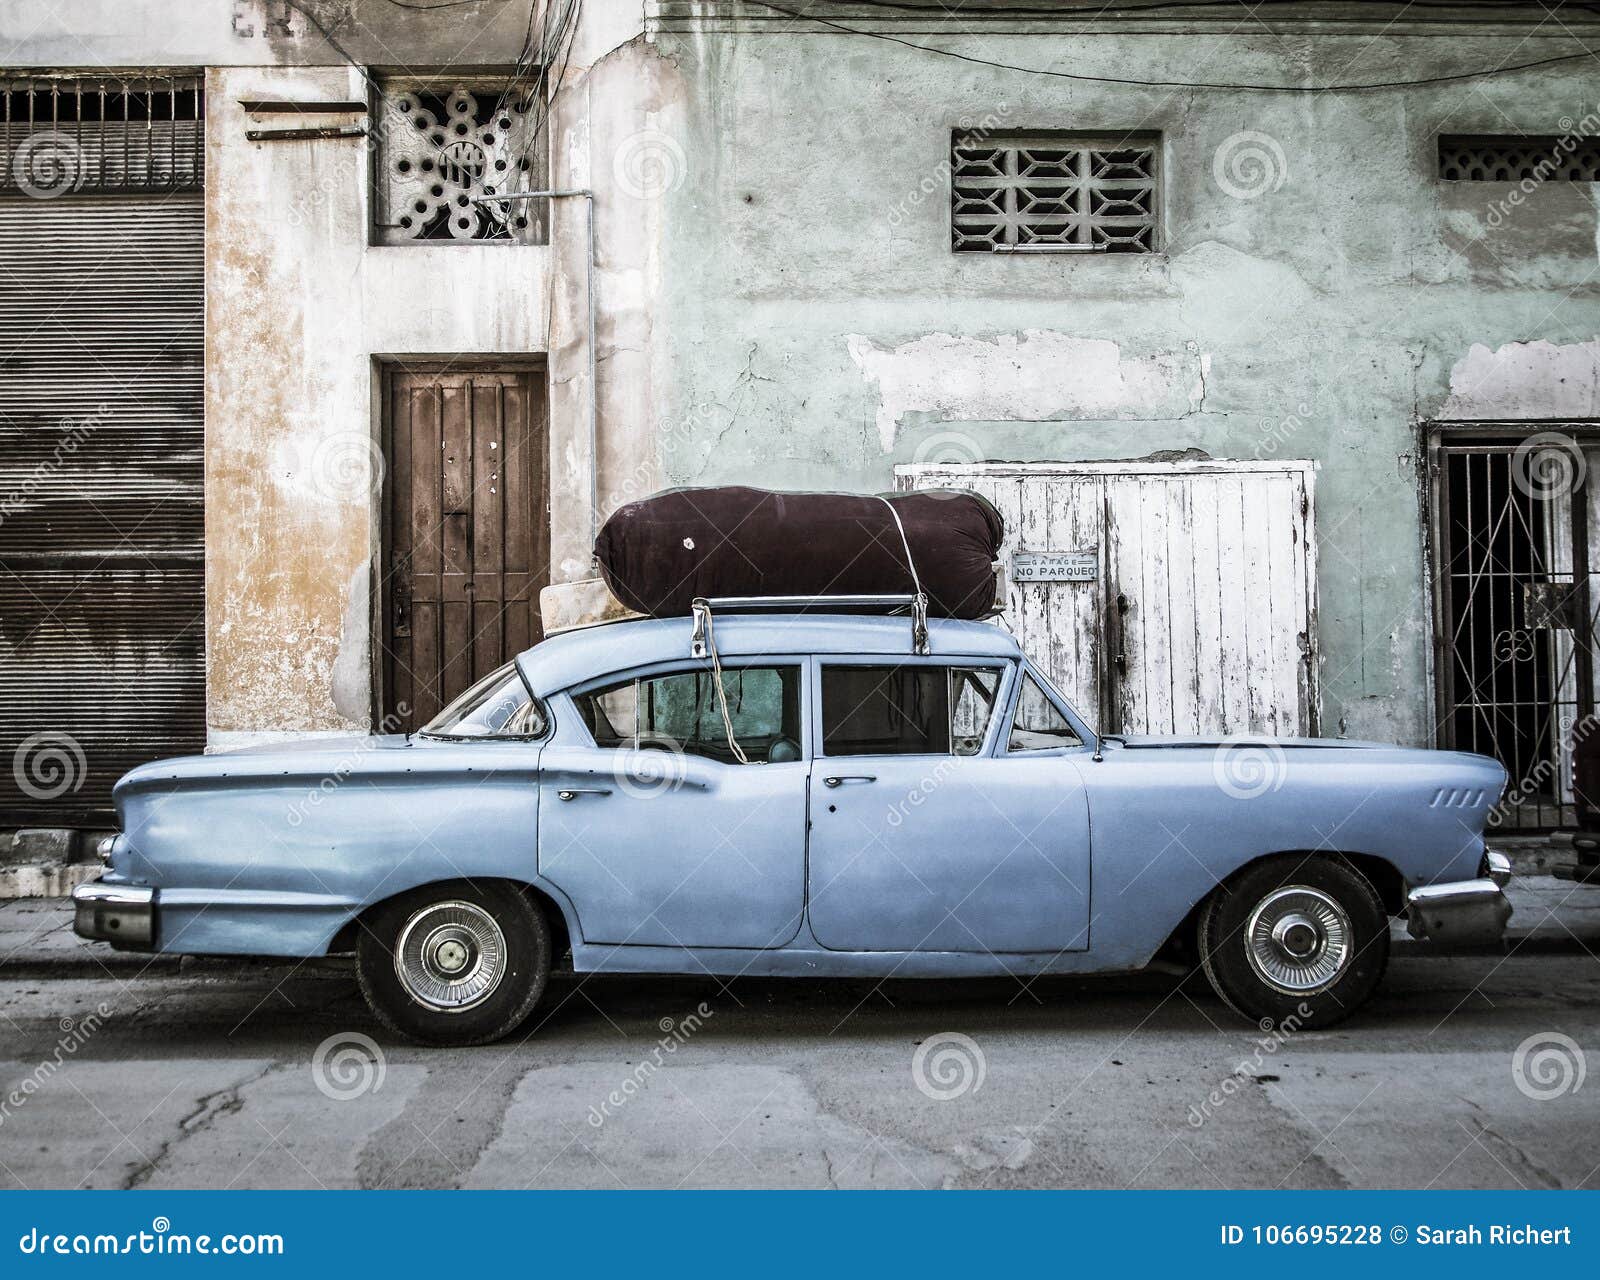 vintage car in havana vieja